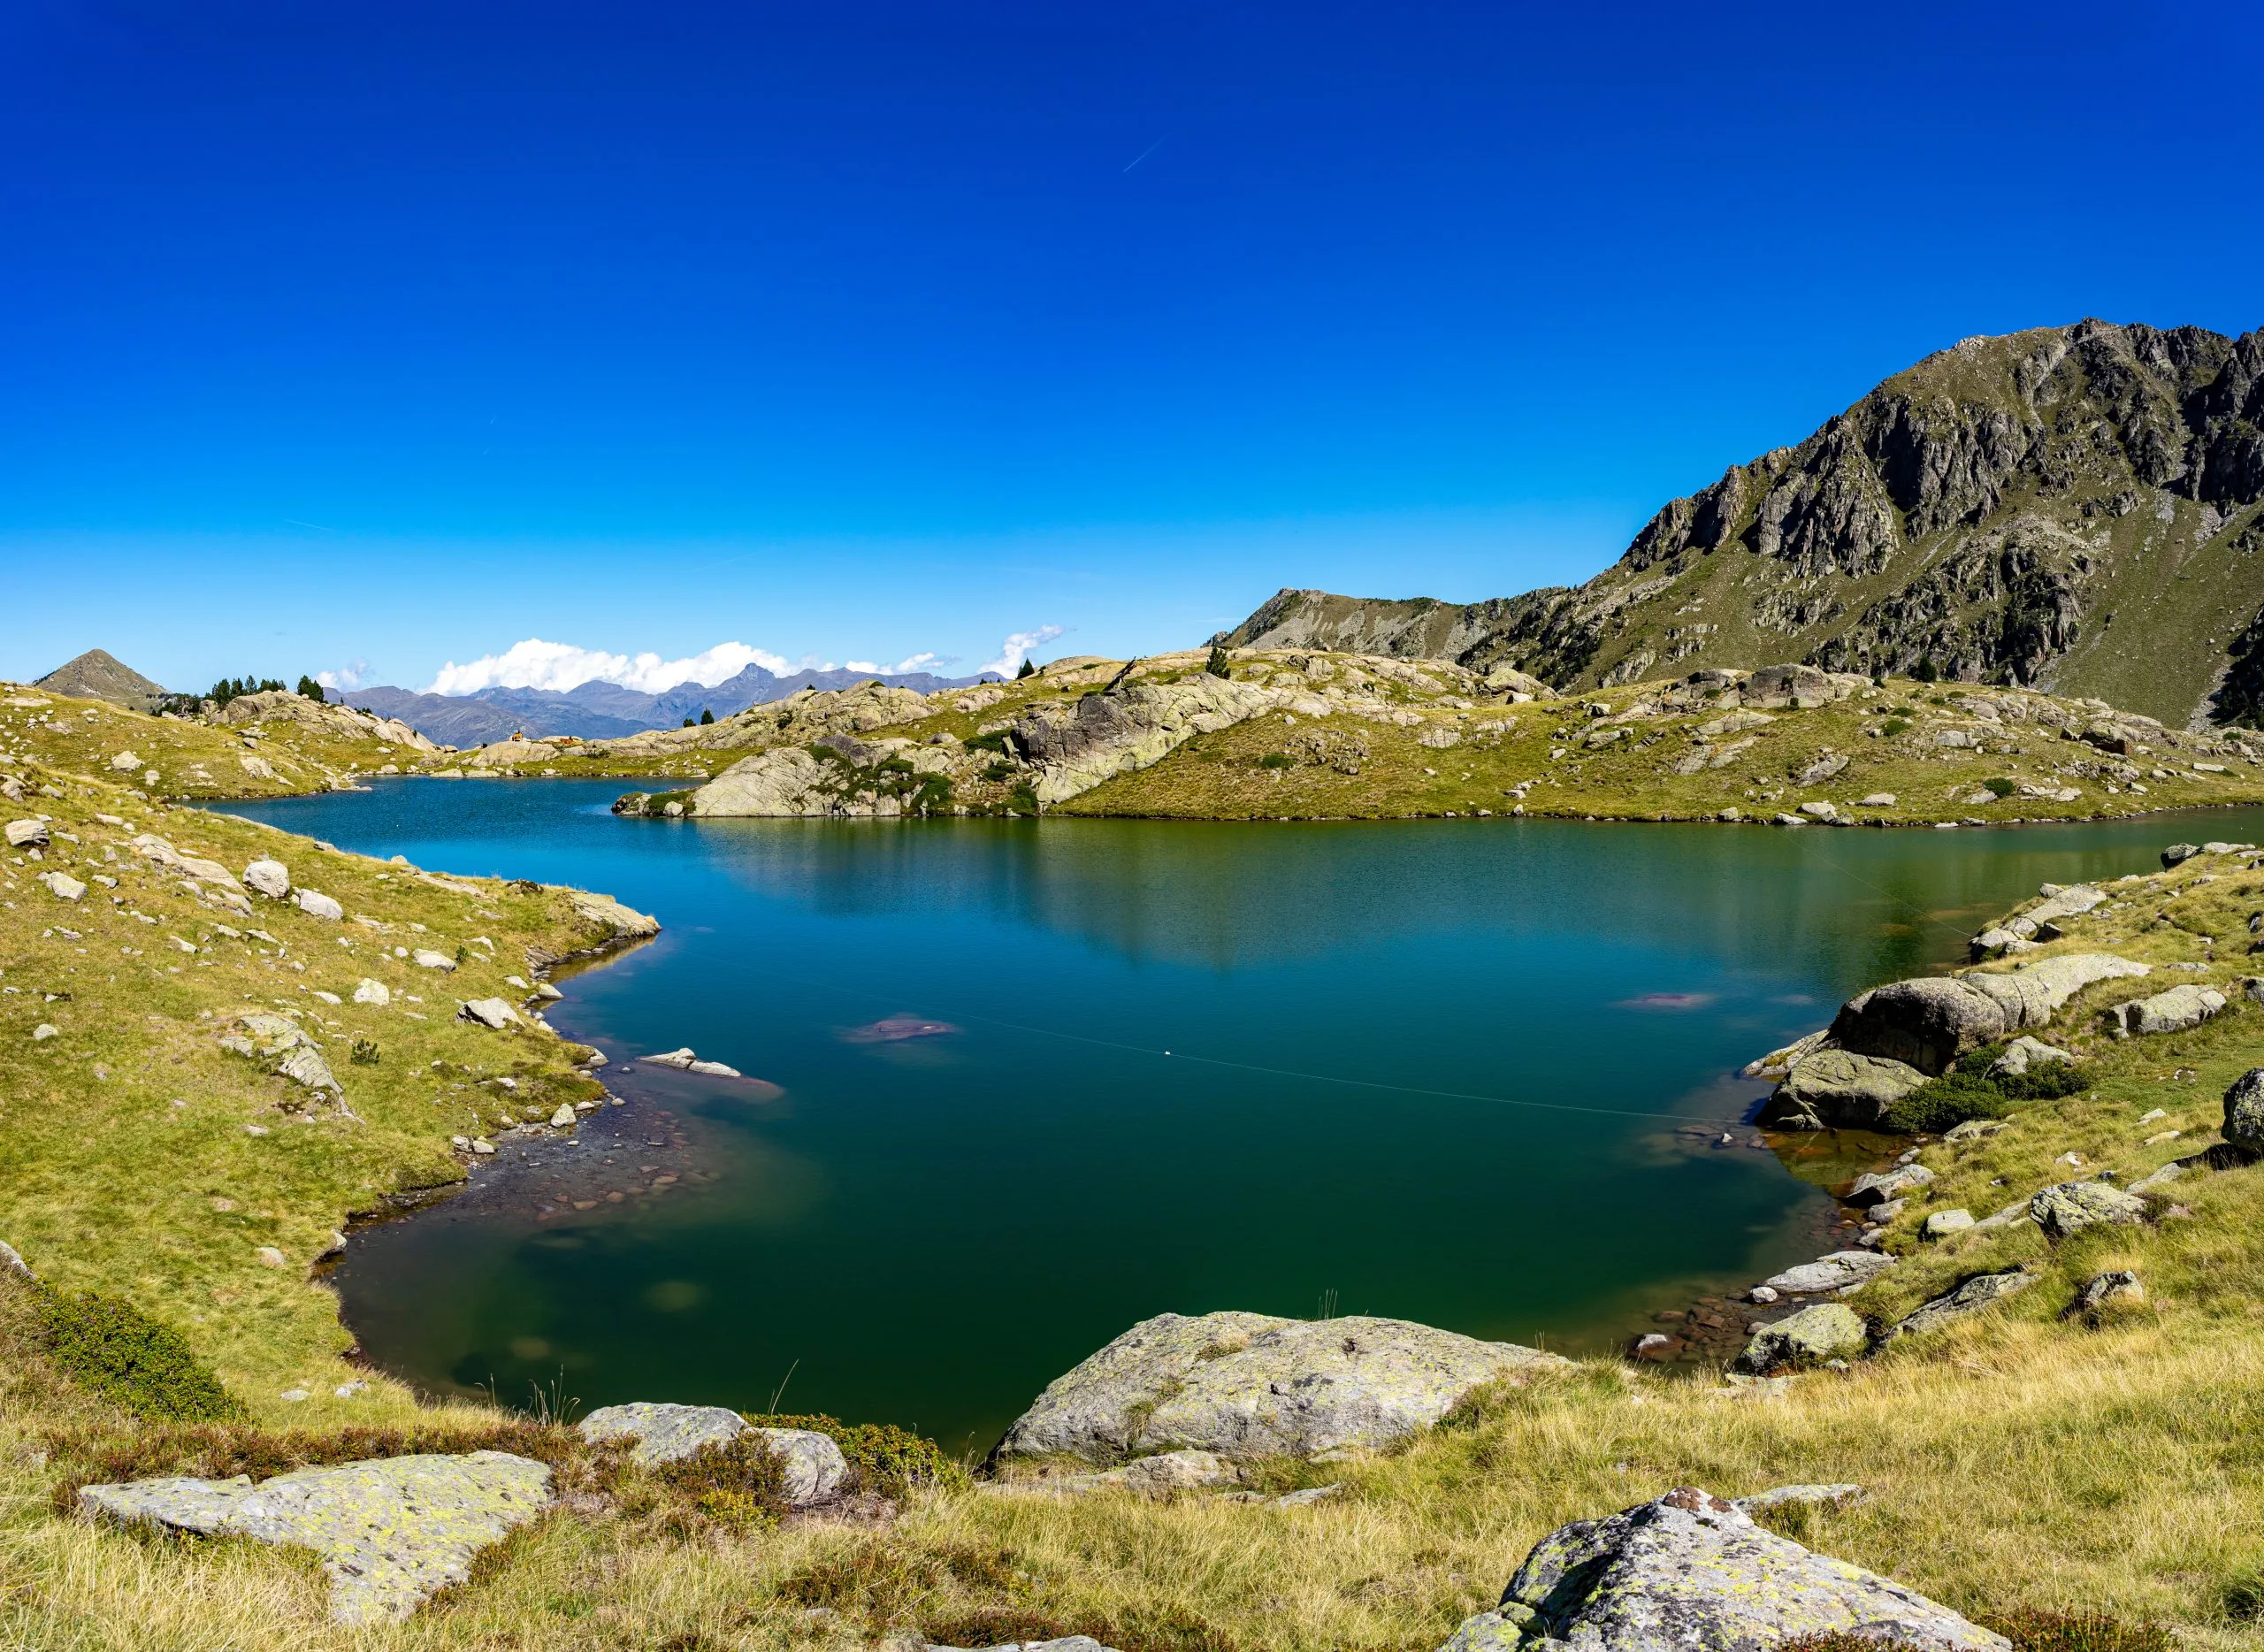 Vacaciones de verano en los Pirineos españoles: Paseo por el mirador de Colomers en el Parque Nacional de Aigues Tortes - Panorama de Weitwinkel